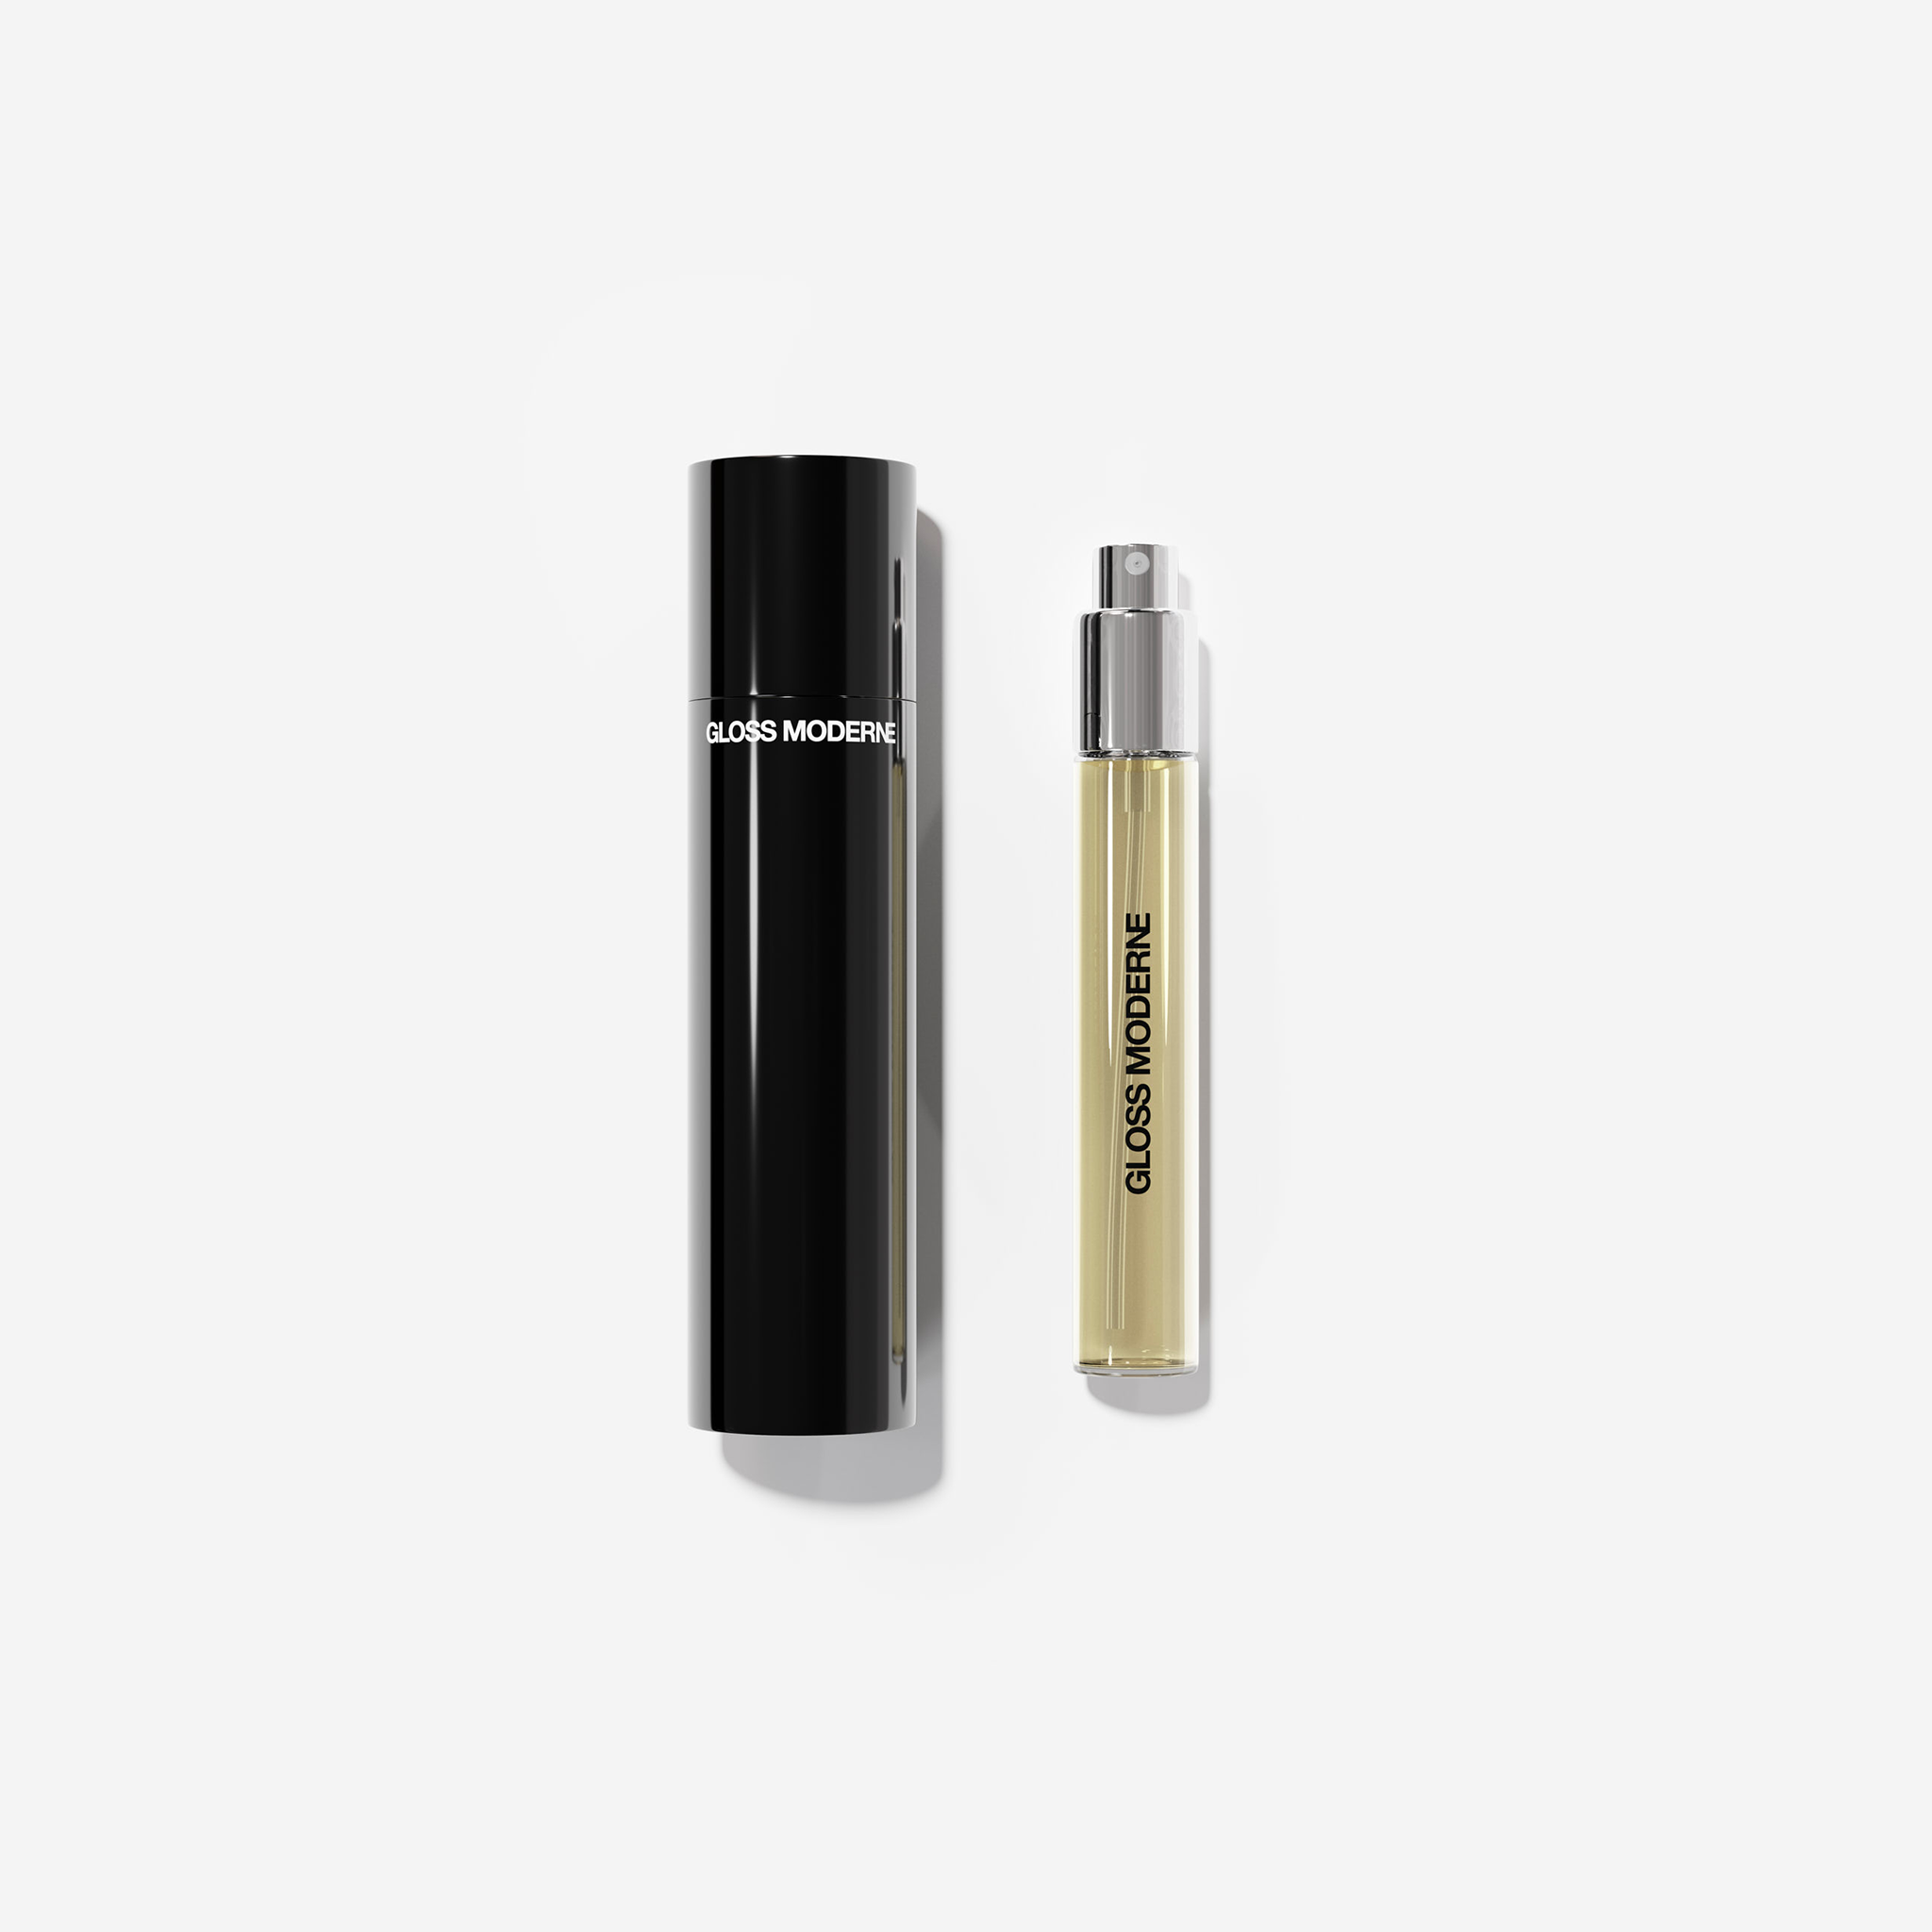 Clean Luxury Signature Travel Case - Parfum